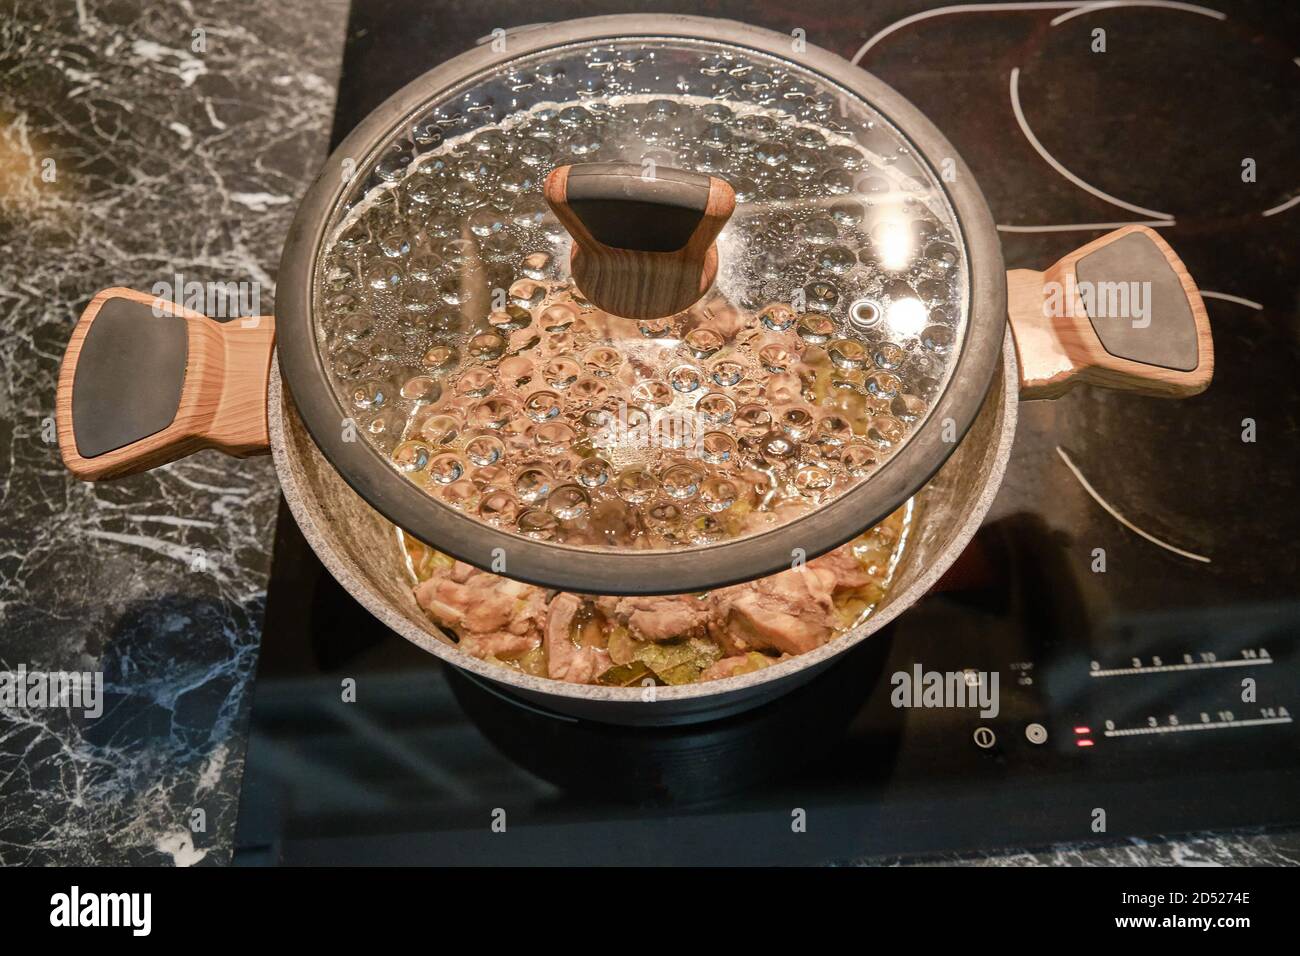 Le pot est placé sur une cuisinière électrique de cuisine avec le couvercle s'ouvre Banque D'Images